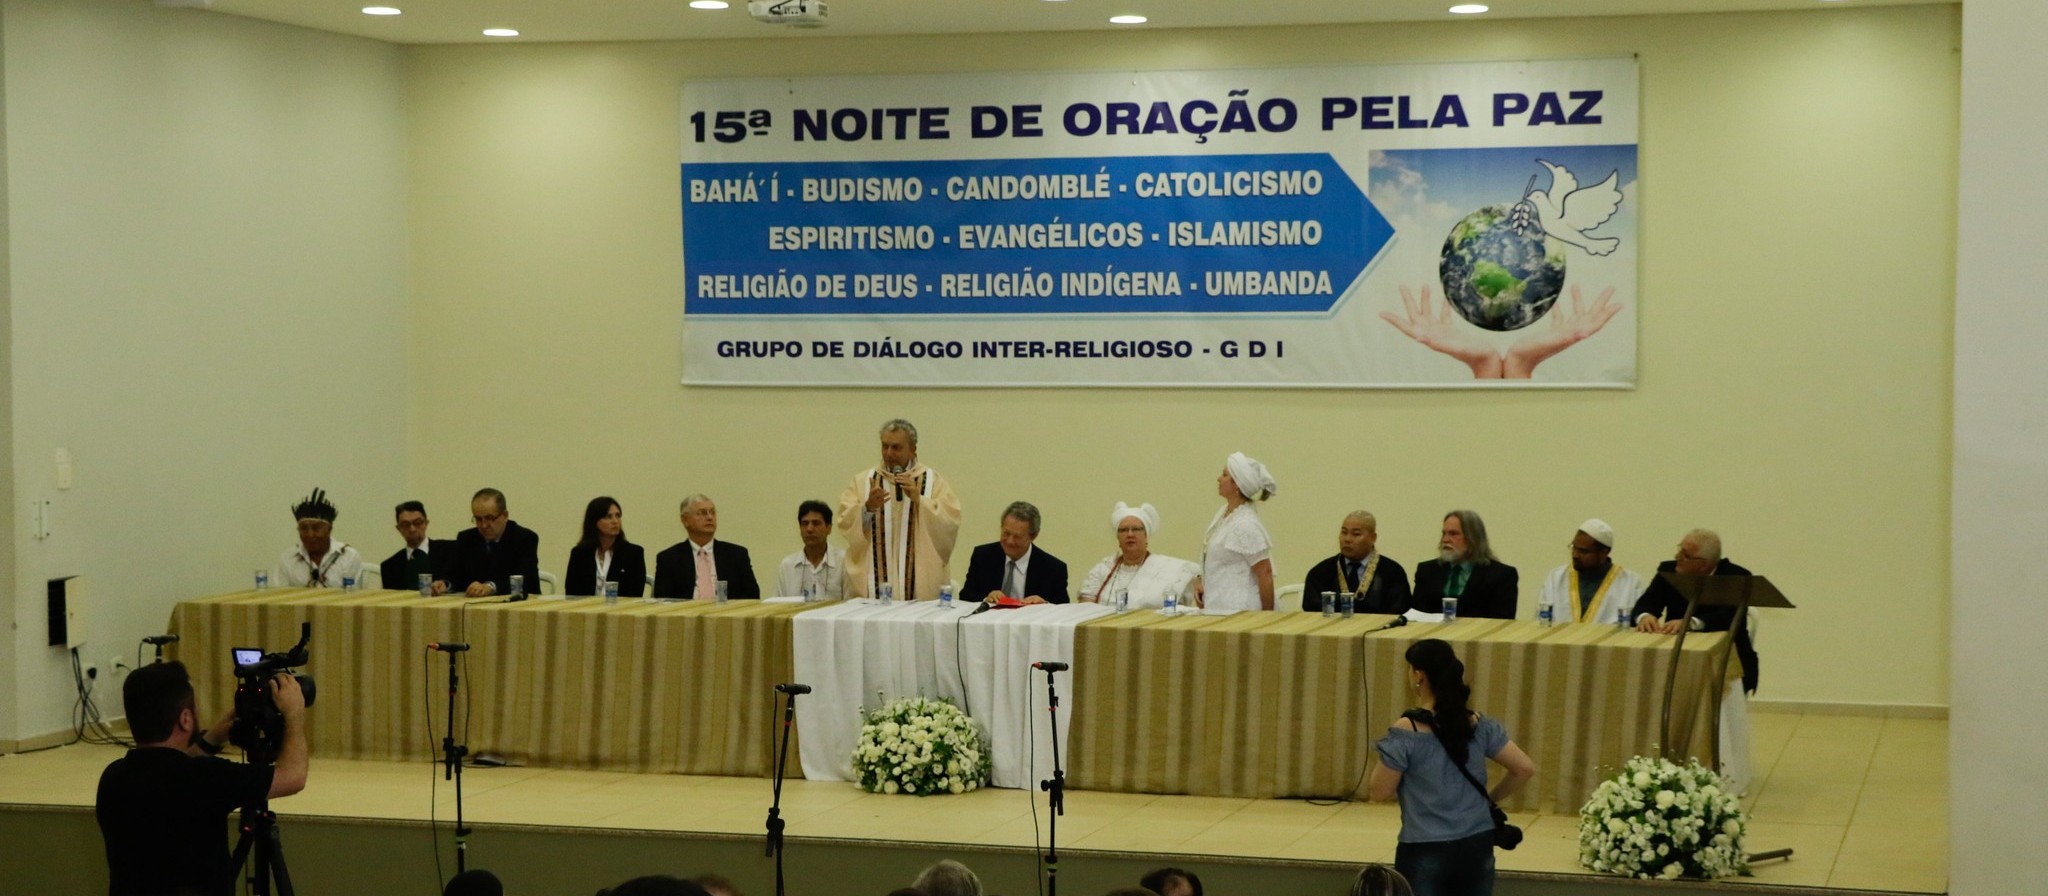 Maringá terá a 16ª Noite de Oração pela Paz com 11 religiões